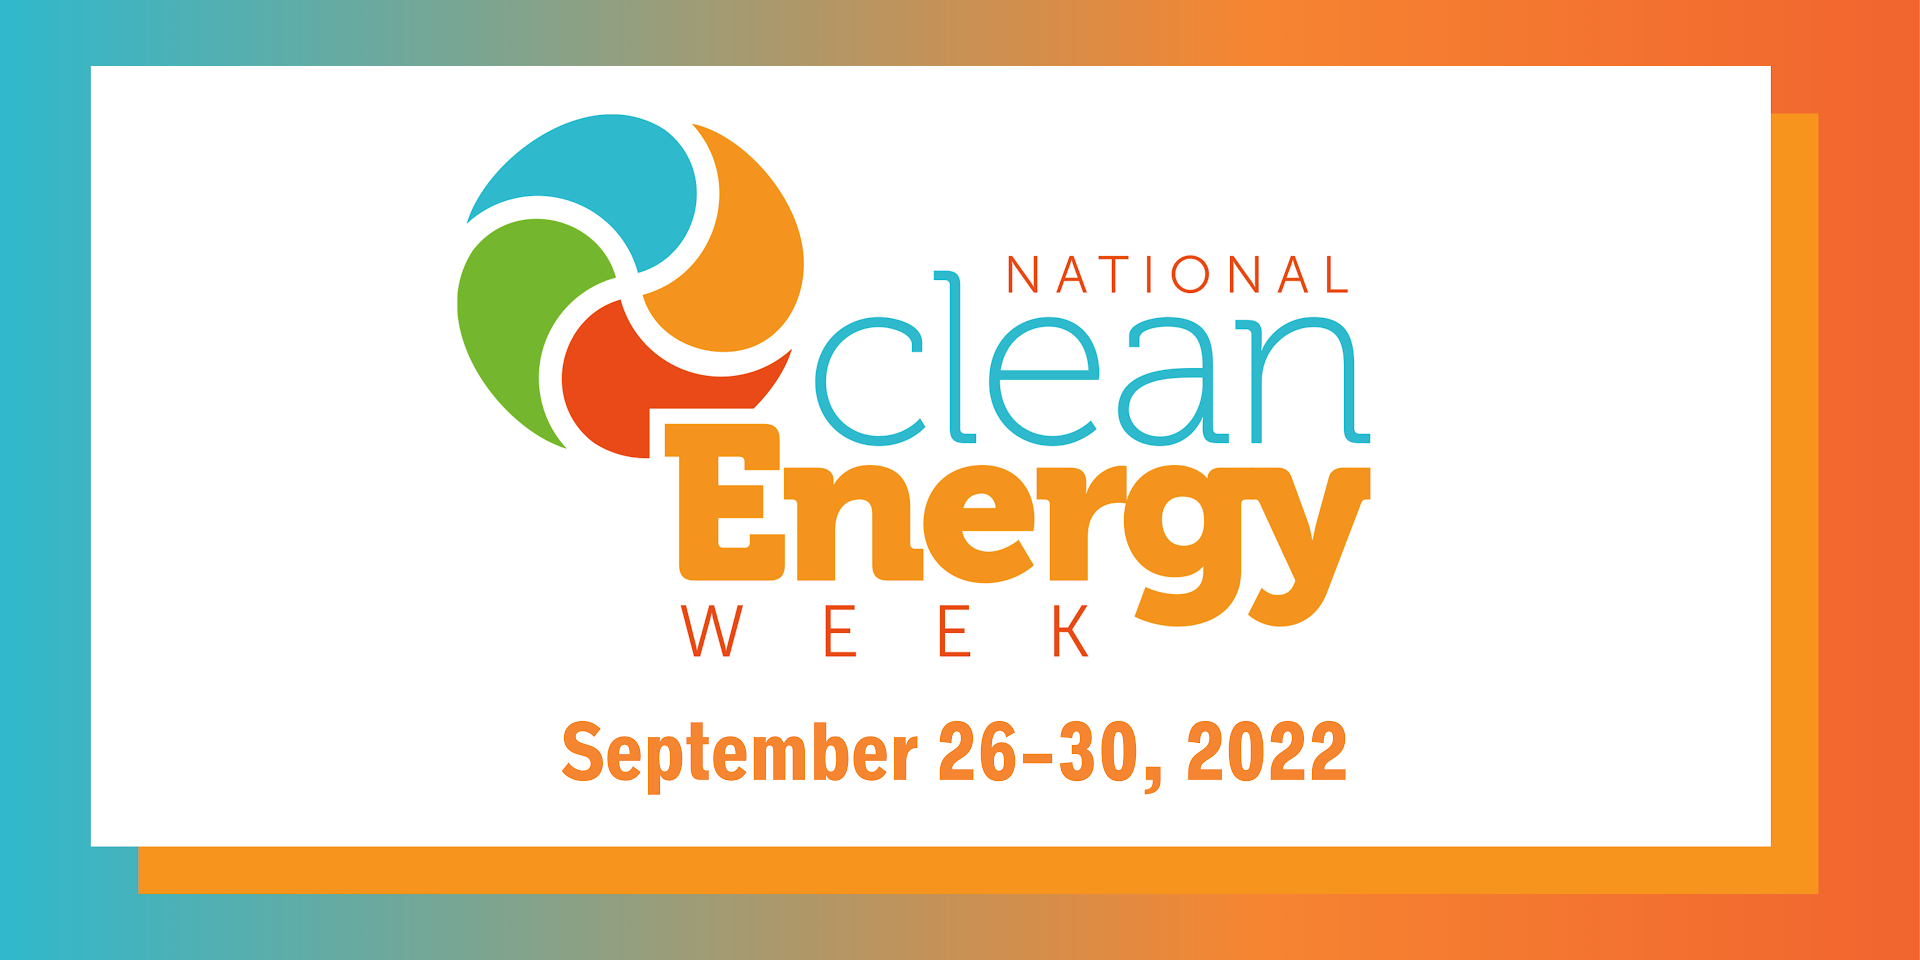 National Clean Energy Week - SEPTEMBER 26-30, 2022